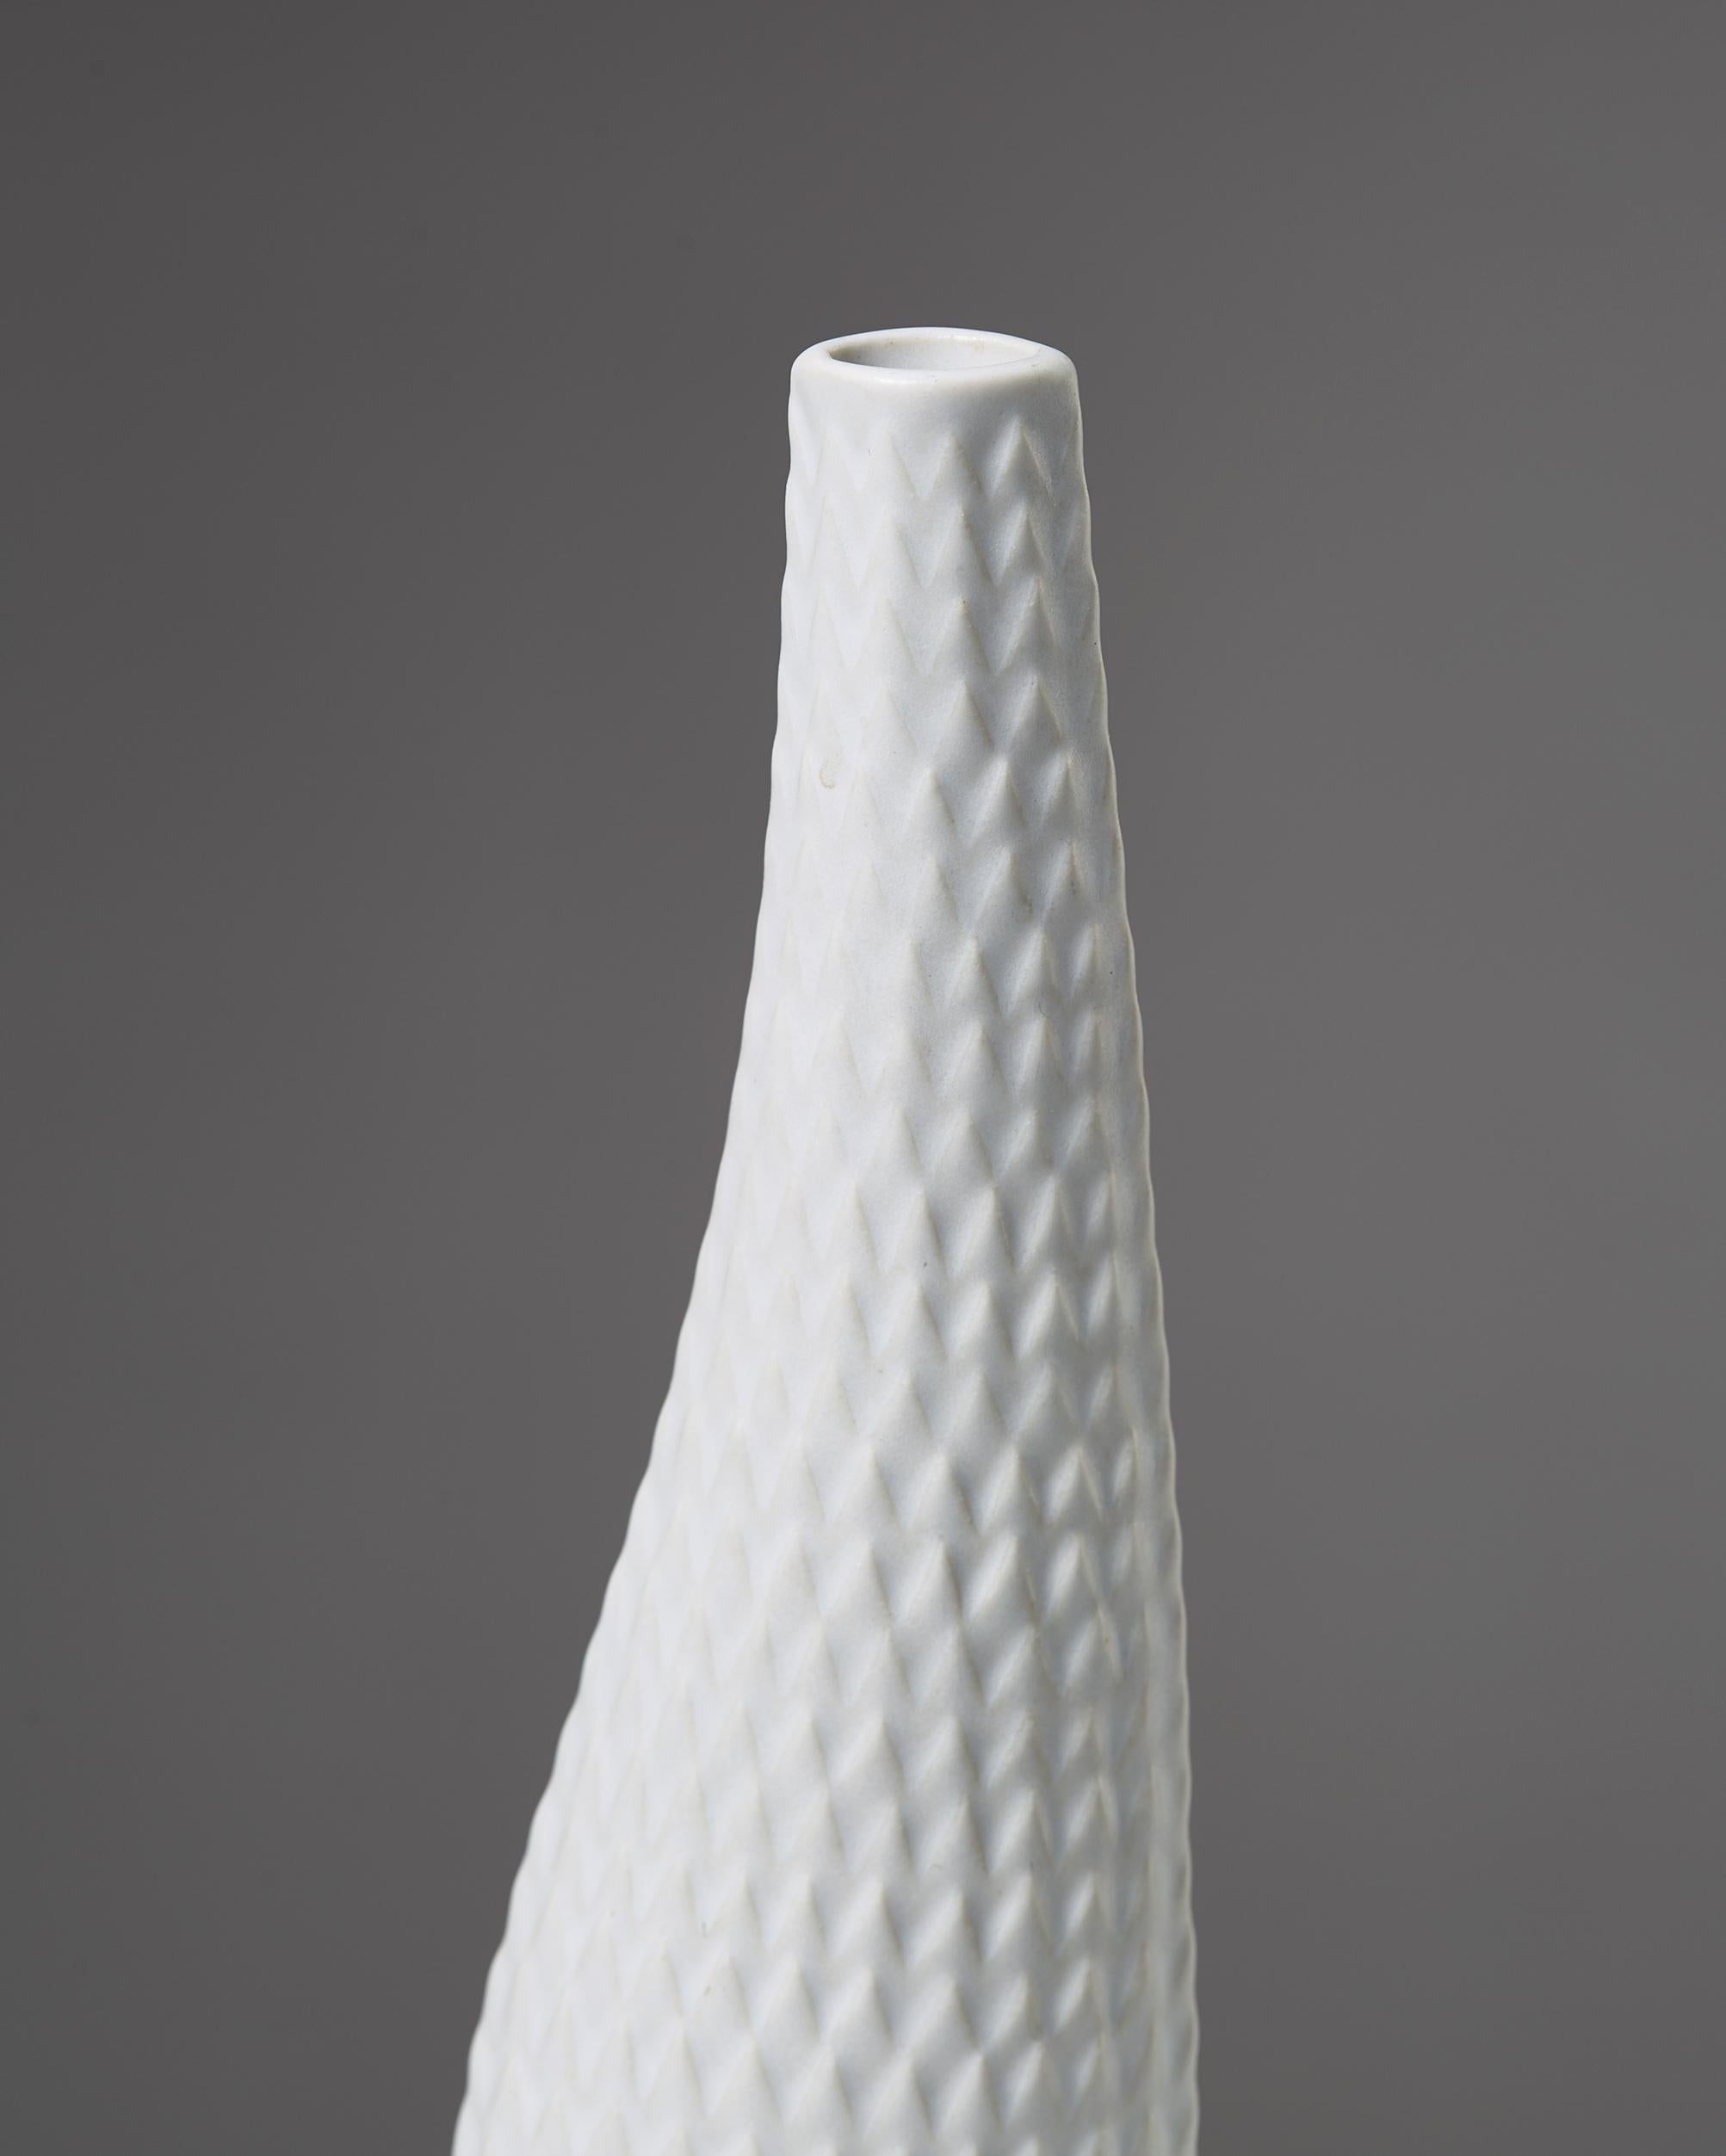 Vase “Reptile” Designed by Stig Lindberg for Gustavsberg, Sweden, 1953 In Good Condition For Sale In Stockholm, SE